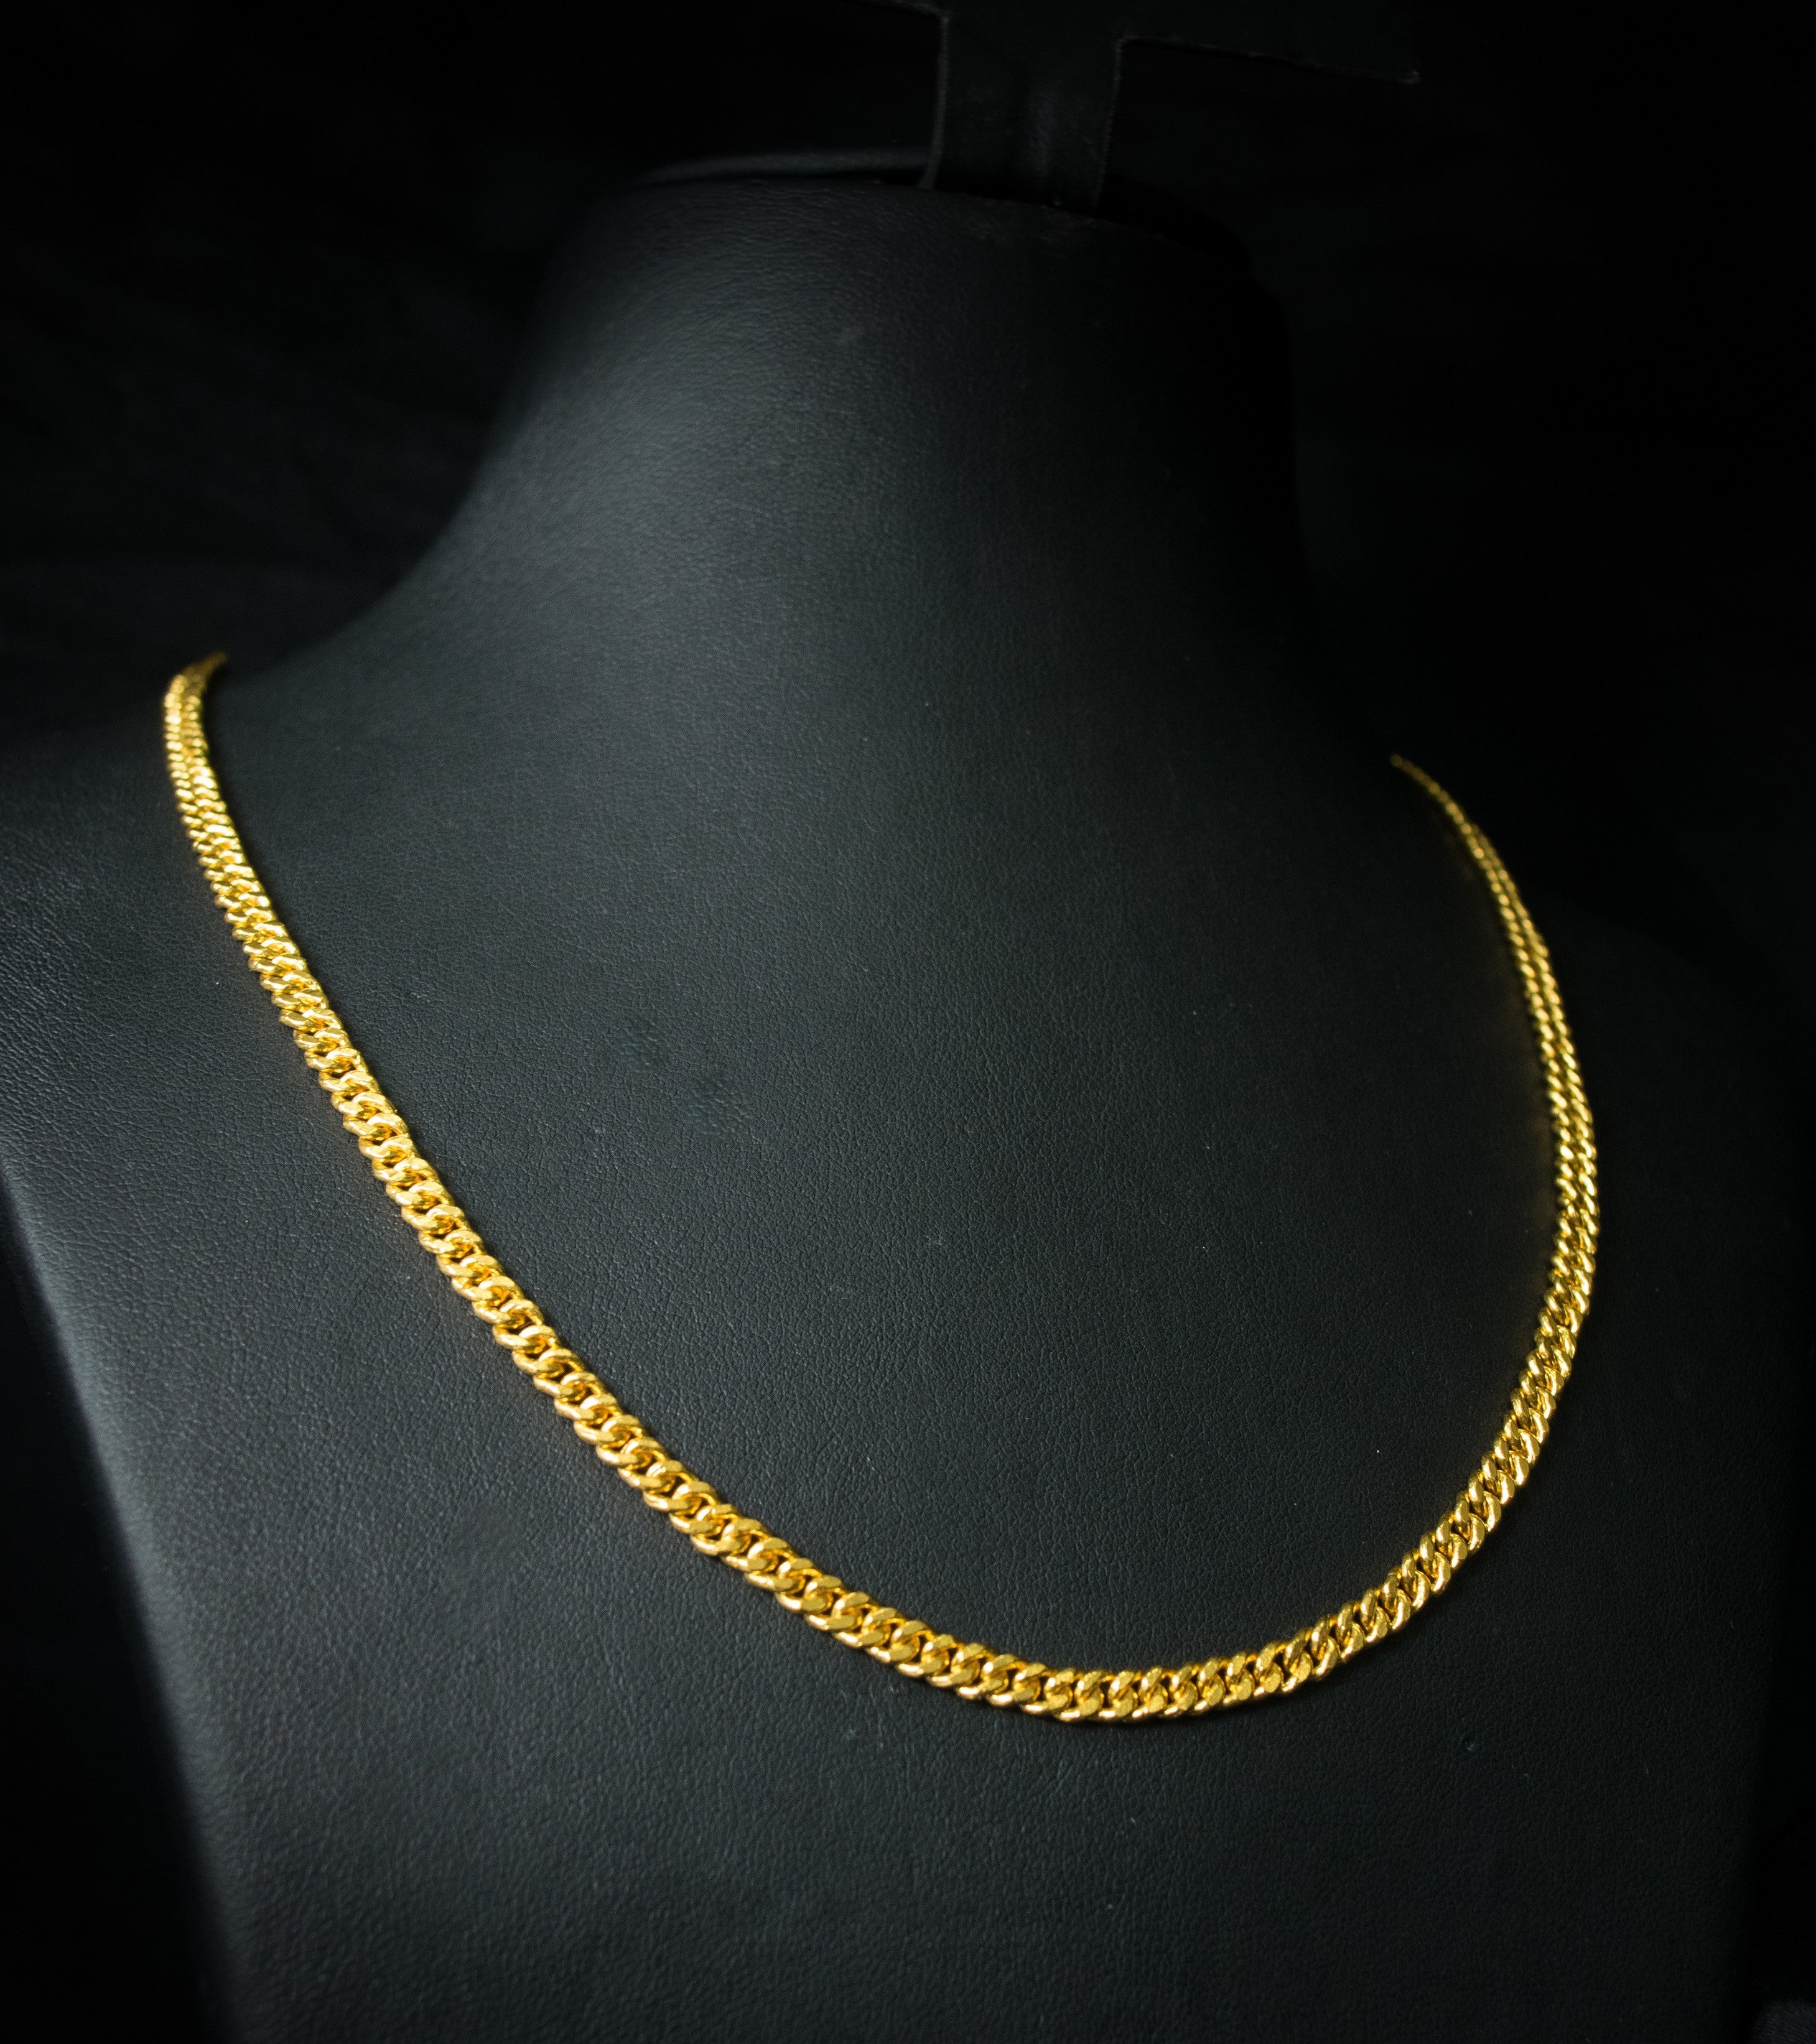 klein terugtrekken Gedeeltelijk 24K/22K Gold Chain - Queens D & J – Etiquetado "Necklace"